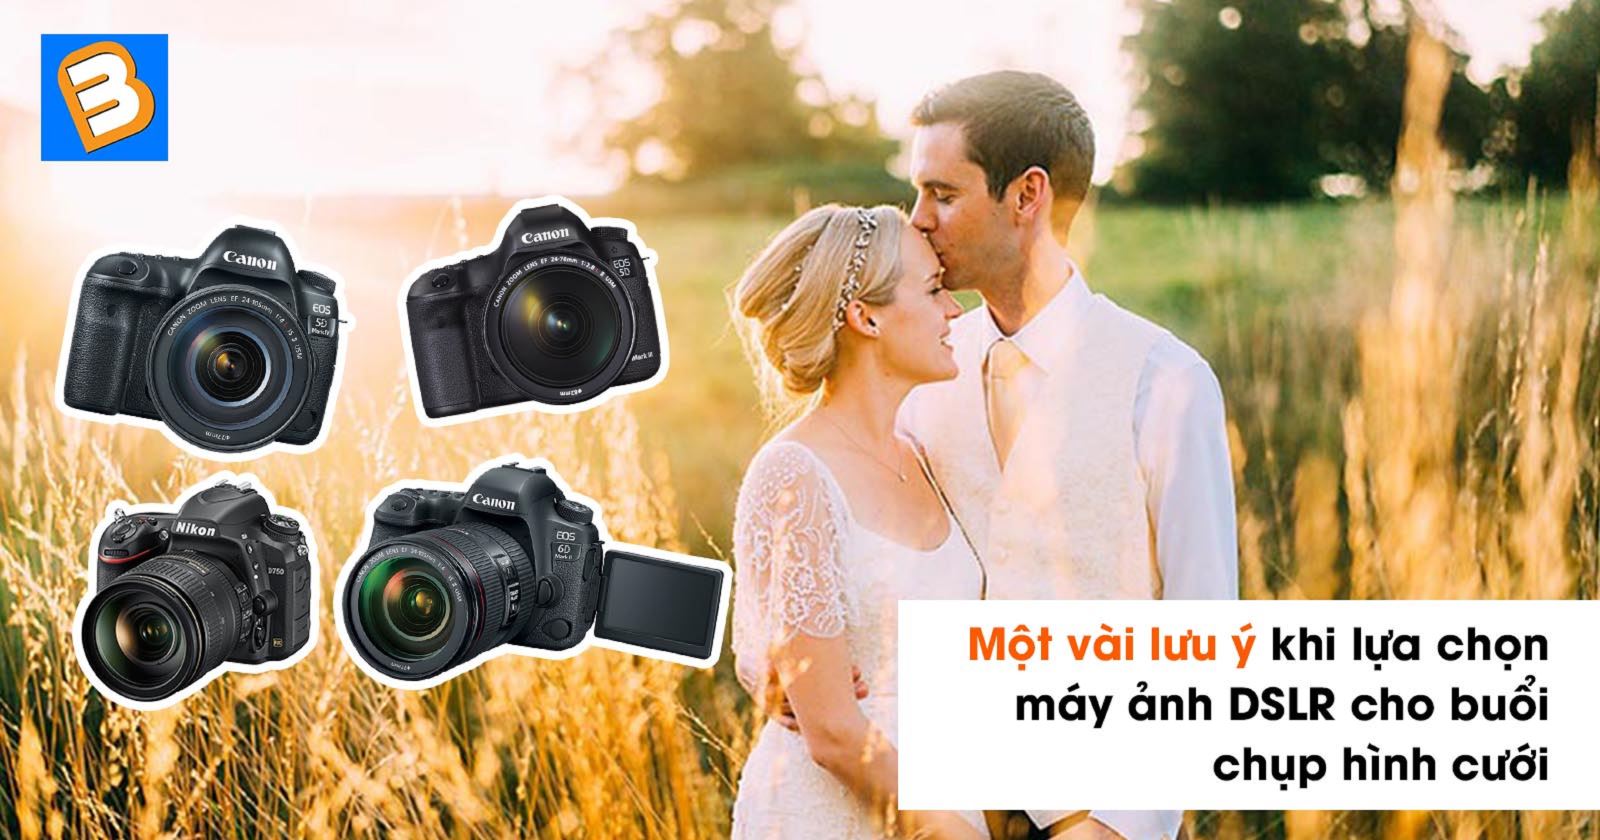 Máy ảnh DSLR: Máy ảnh DSLR là công cụ hỗ trợ vào việc chụp ảnh chuyên nghiệp với chất lượng hình ảnh vượt trội. Khả năng tùy chỉnh cao, chụp ảnh ở bất kỳ góc độ nào. Máy ảnh DSLR là chiếc máy ảnh đắt tiền, nhưng sẽ đem lại chất lượng hình ảnh tuyệt vời cho những ai có kinh nghiệm trong việc chụp ảnh.